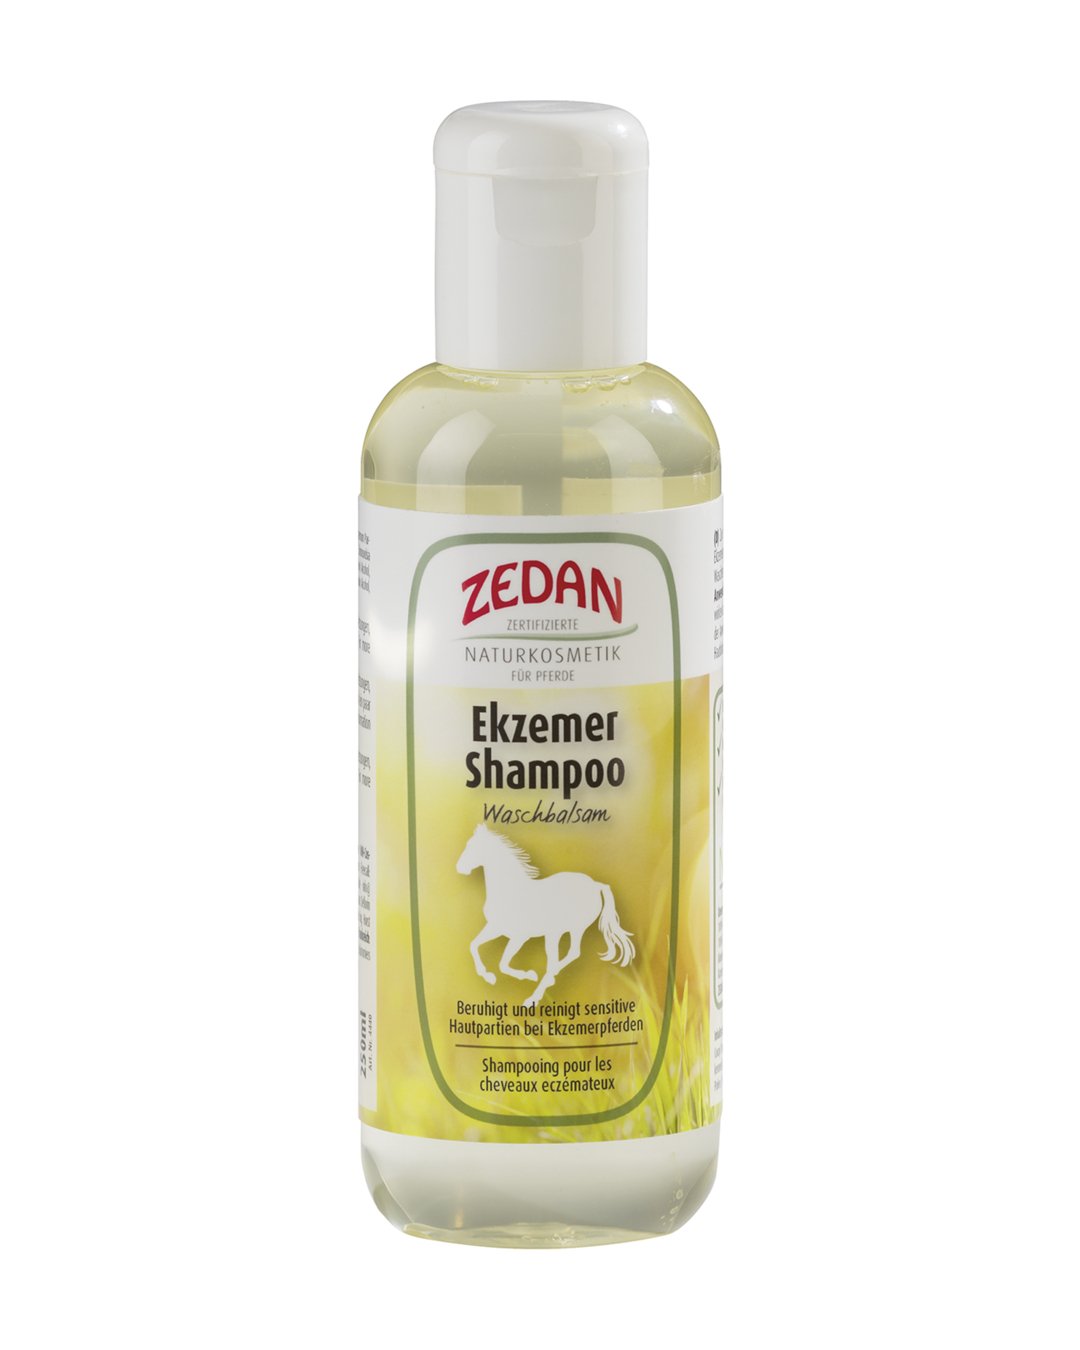 Shampoo Ekzemer Waschbalsam